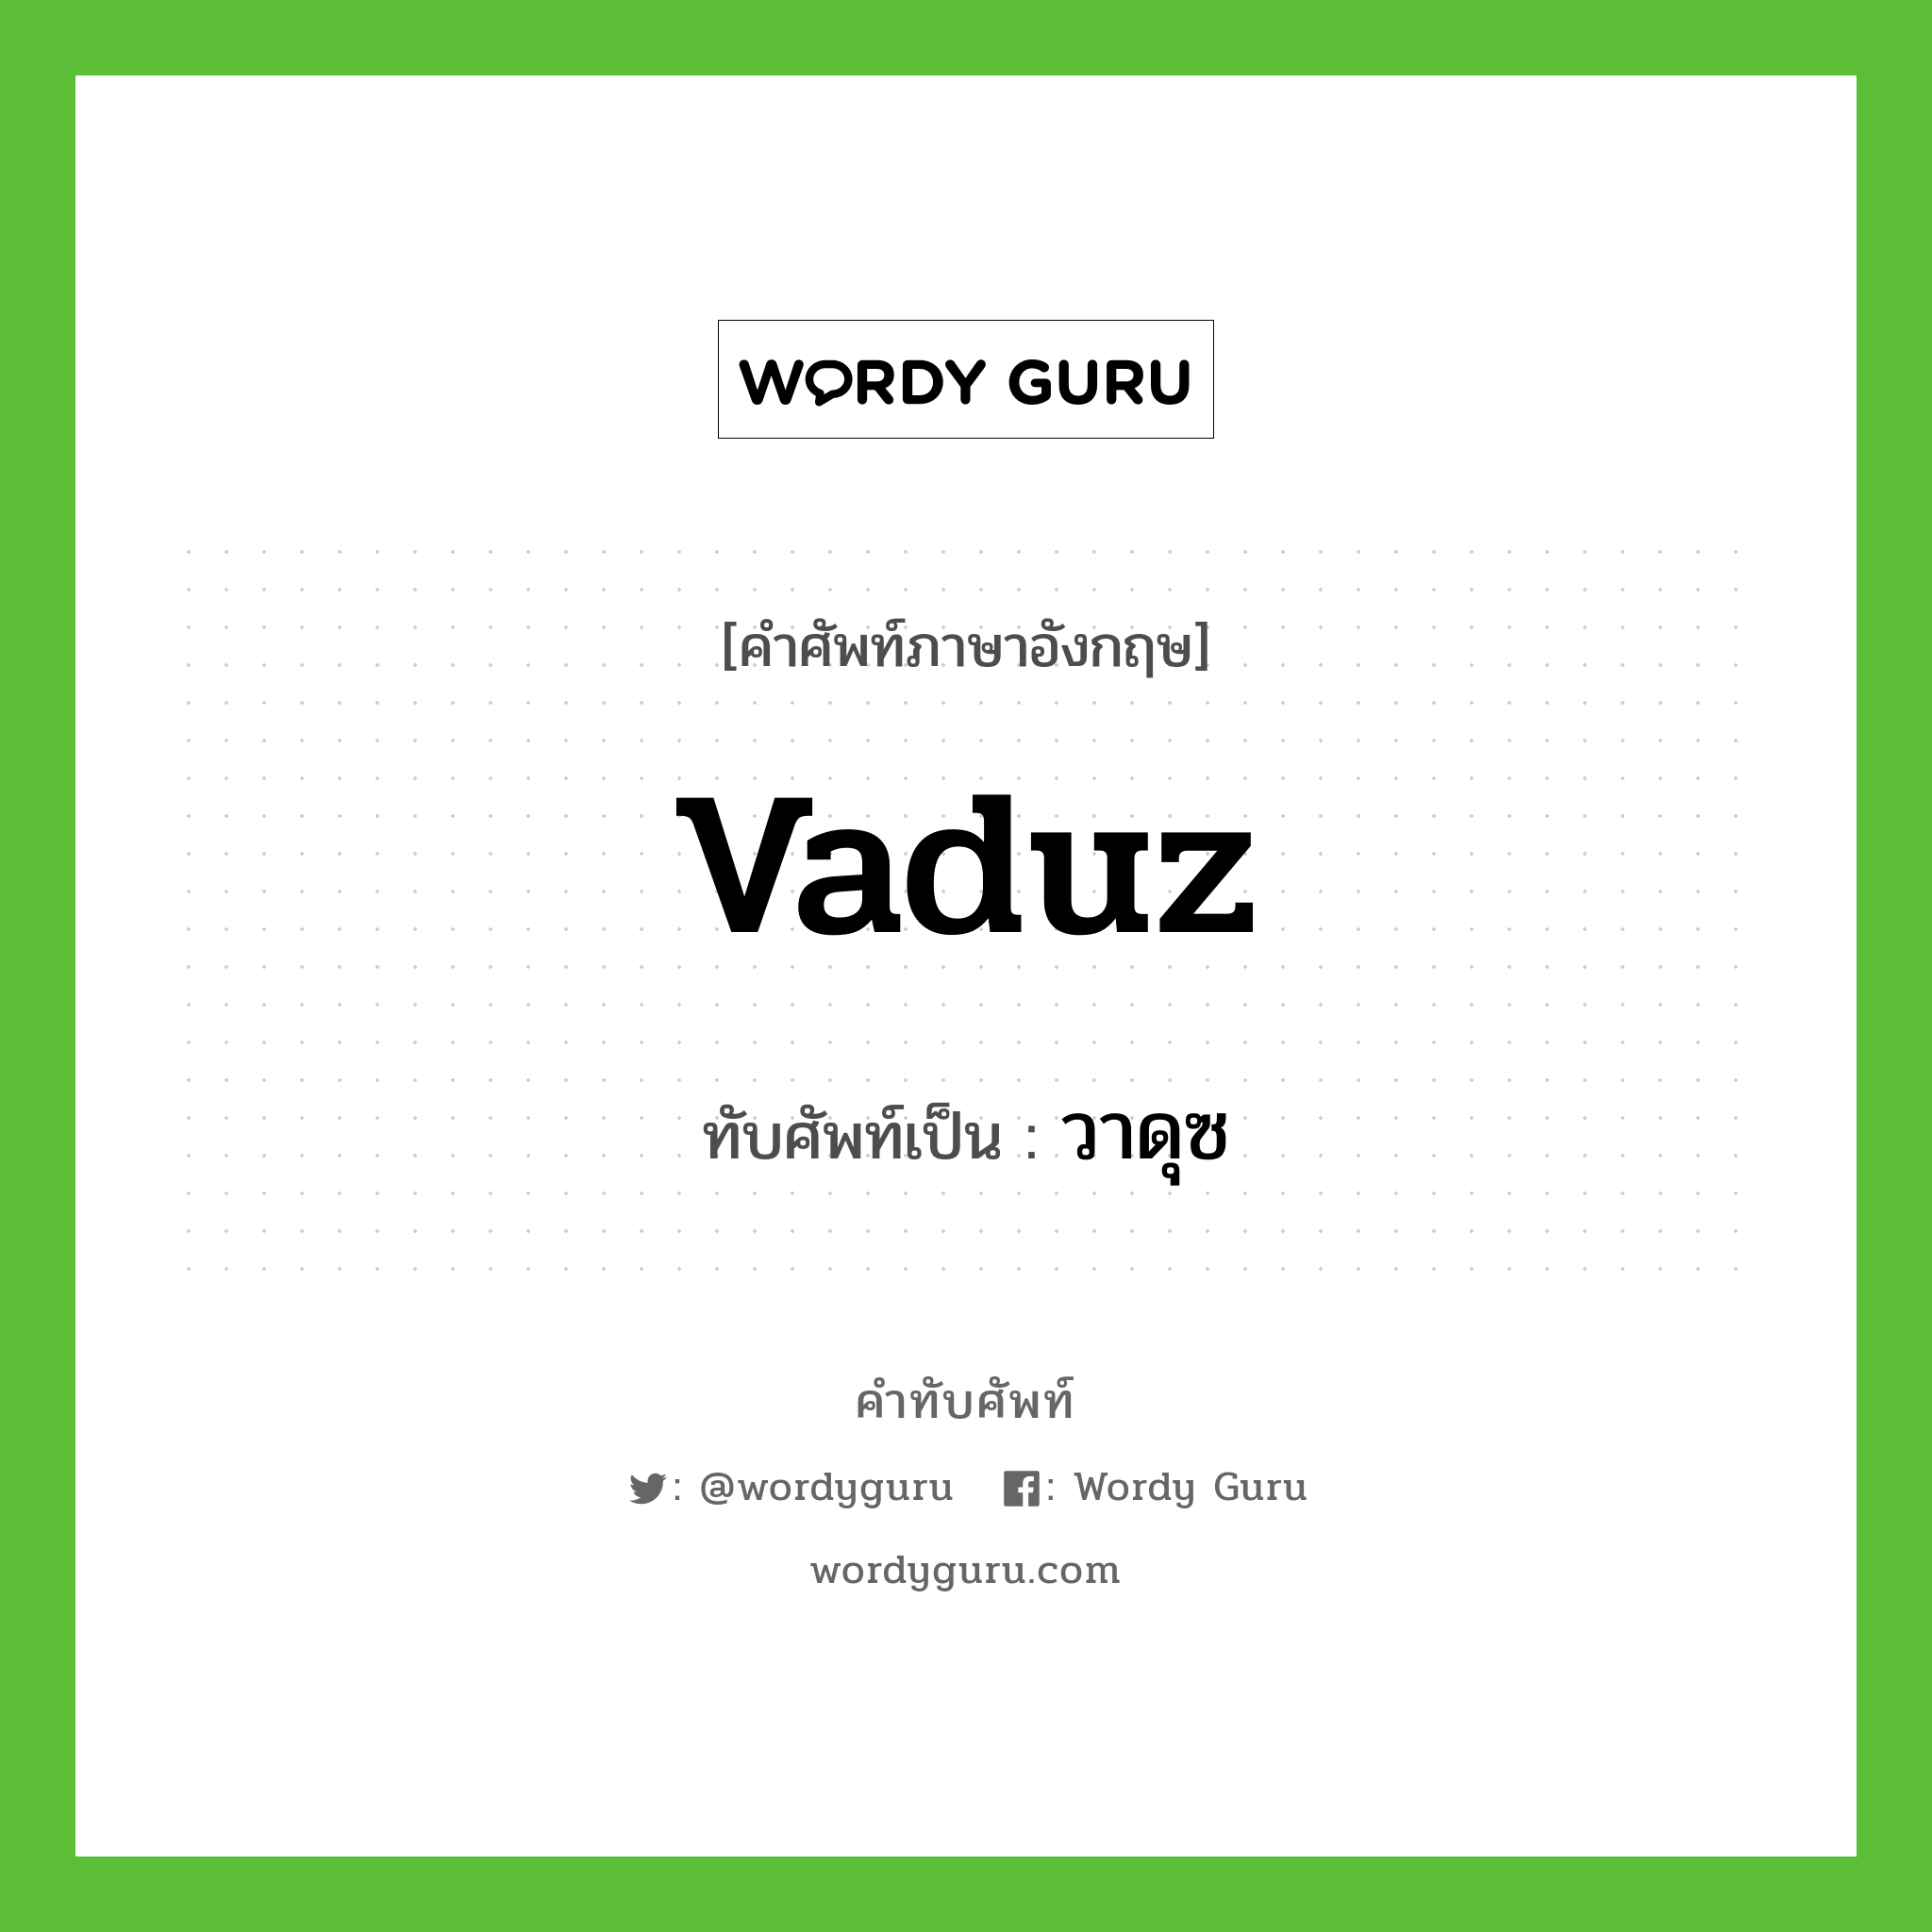 Vaduz เขียนเป็นคำไทยว่าอะไร?, คำศัพท์ภาษาอังกฤษ Vaduz ทับศัพท์เป็น วาดุซ